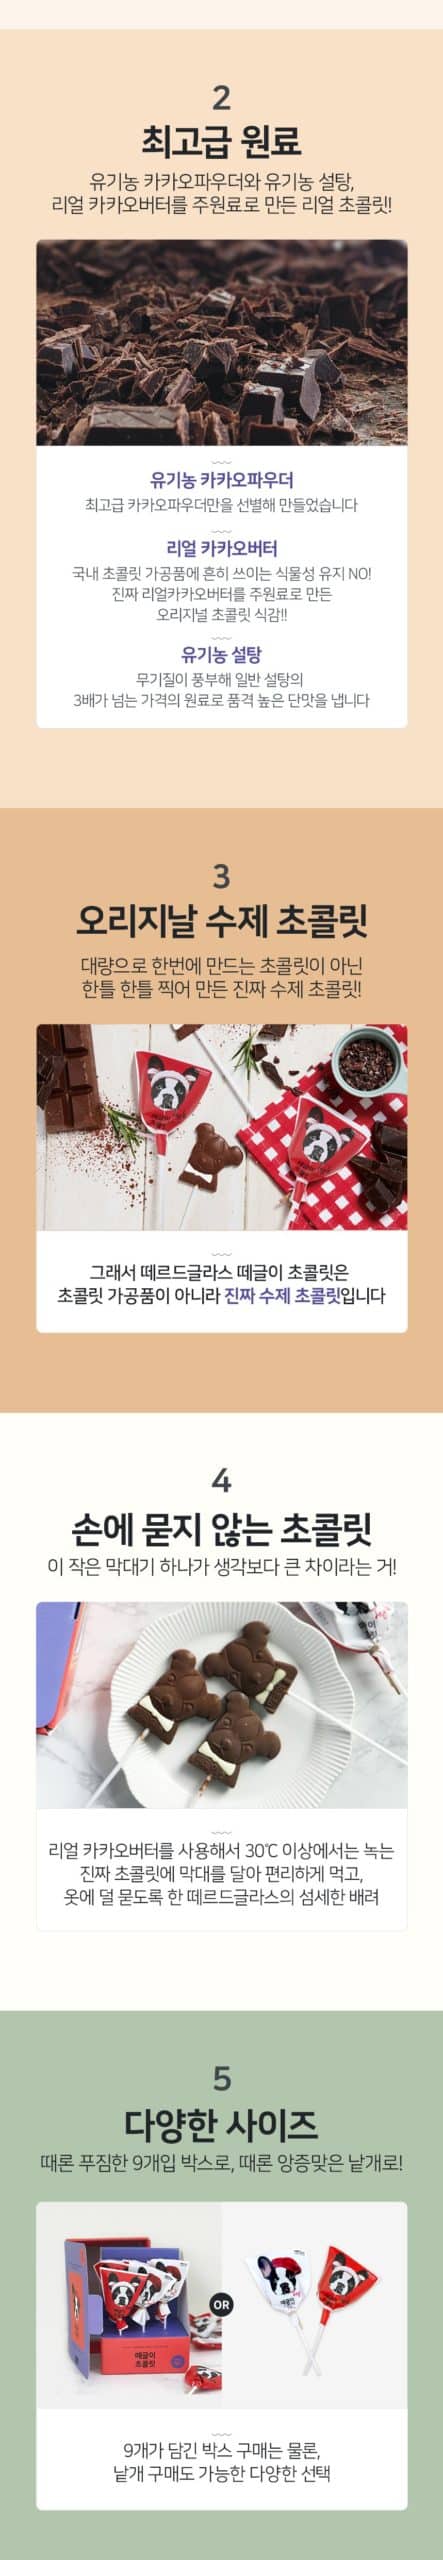 韓國食品-[떼르드글라스] 떼글이 초콜릿 18g